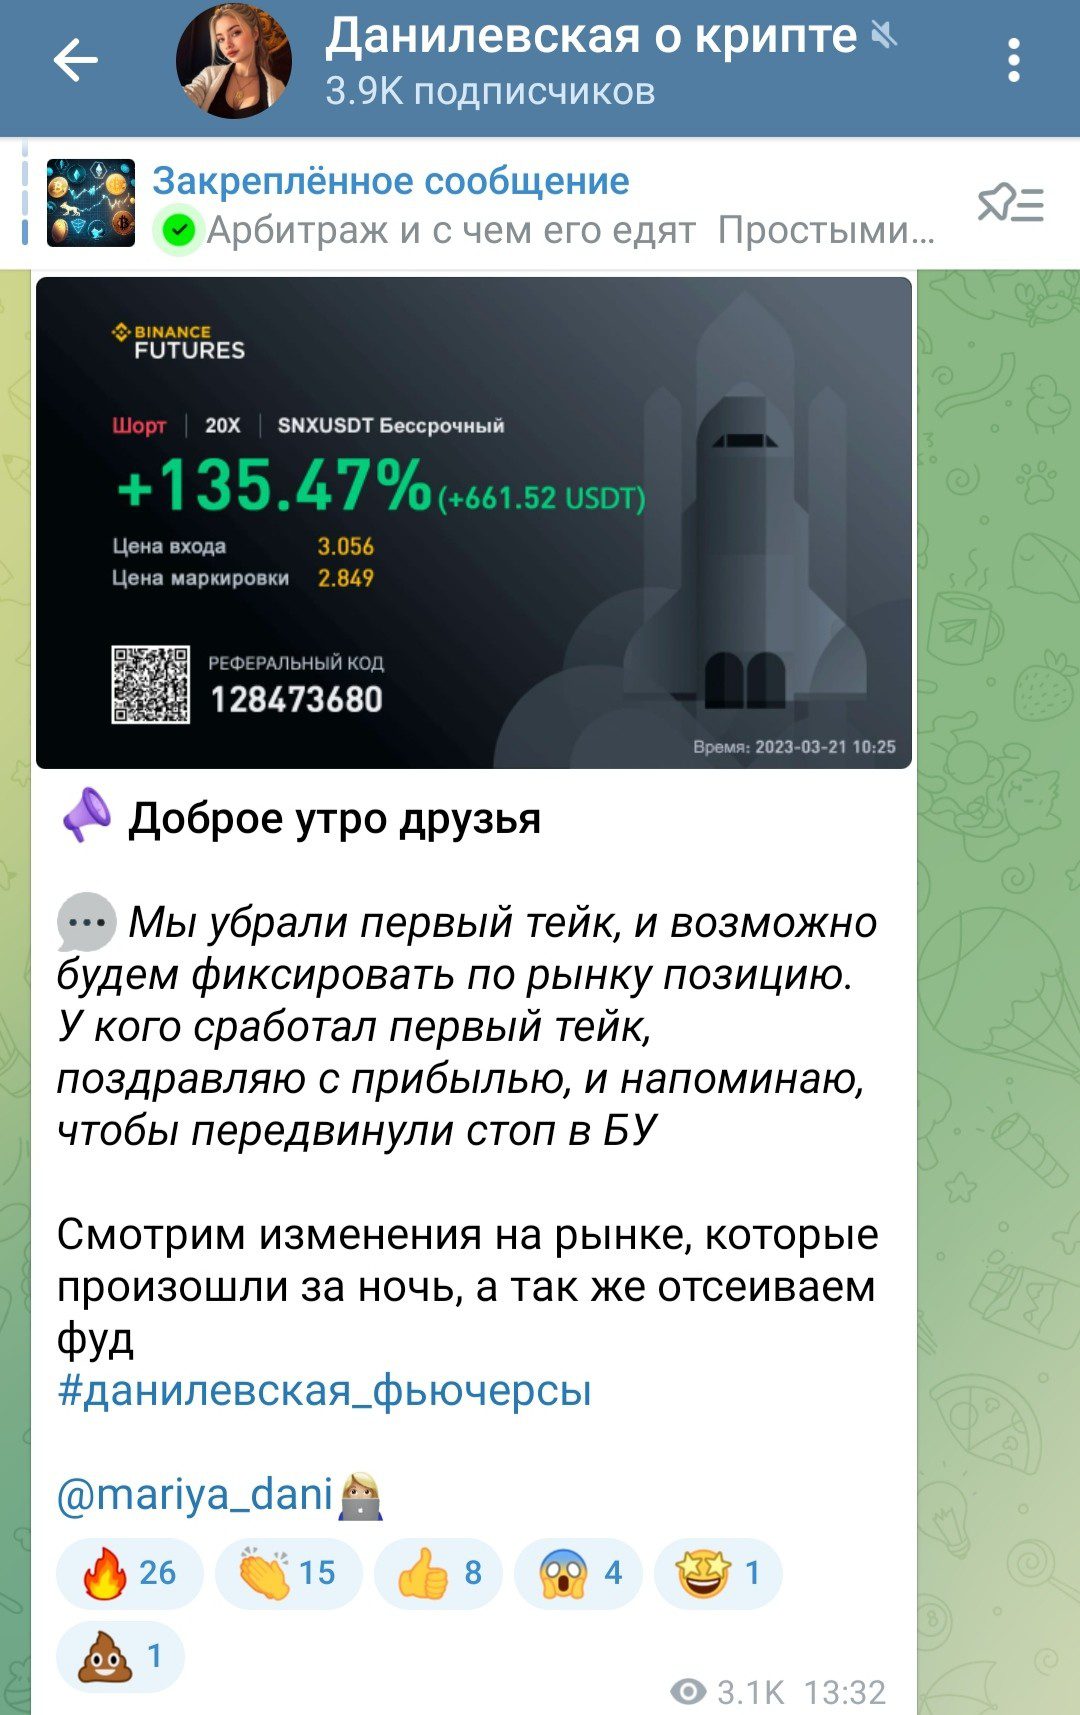 Обзор канала Данилевская о крипте